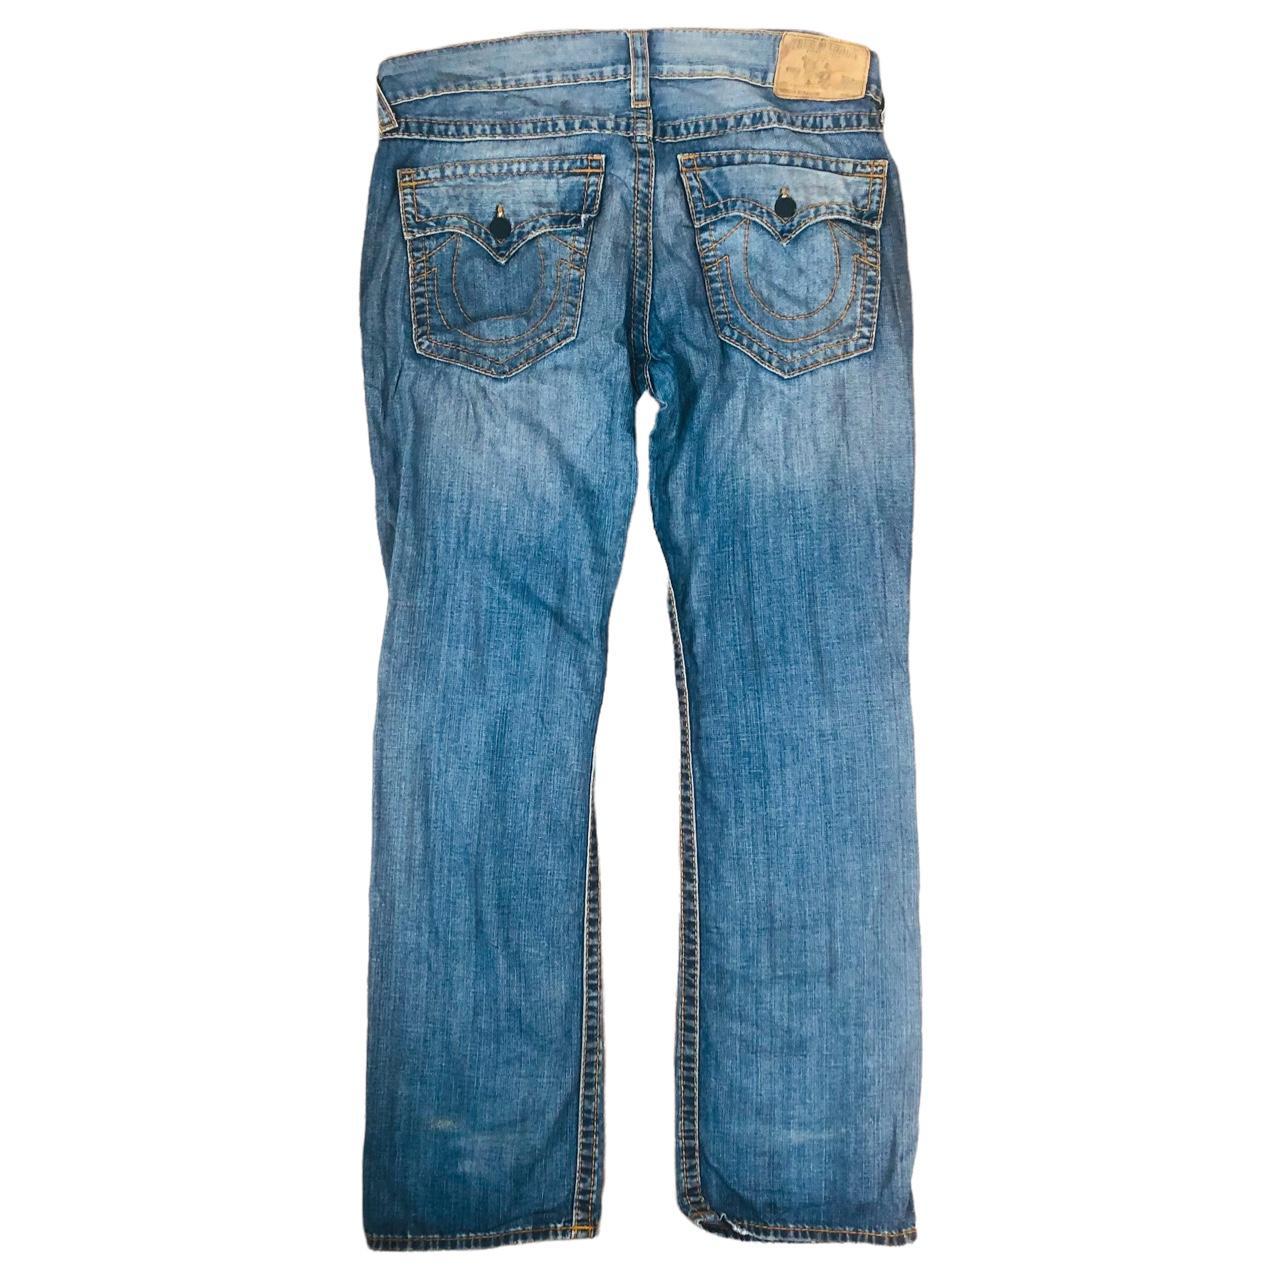 Authentic Vintage True Religion Jeans... - Depop